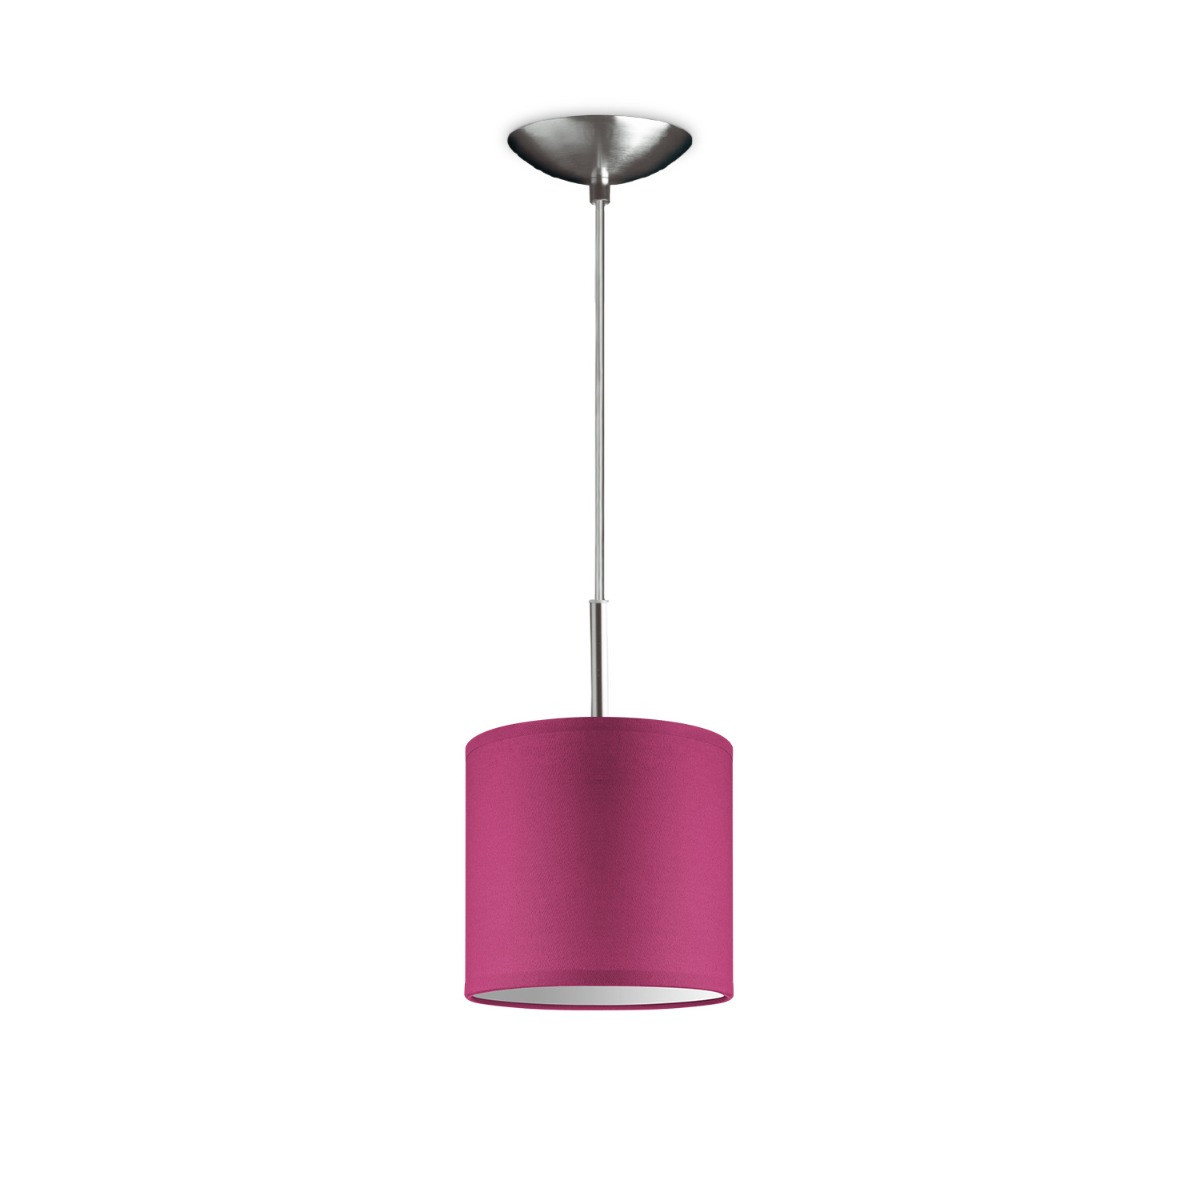 Light depot - hanglamp tube deluxe bling Ø 16 cm - roze - Outlet